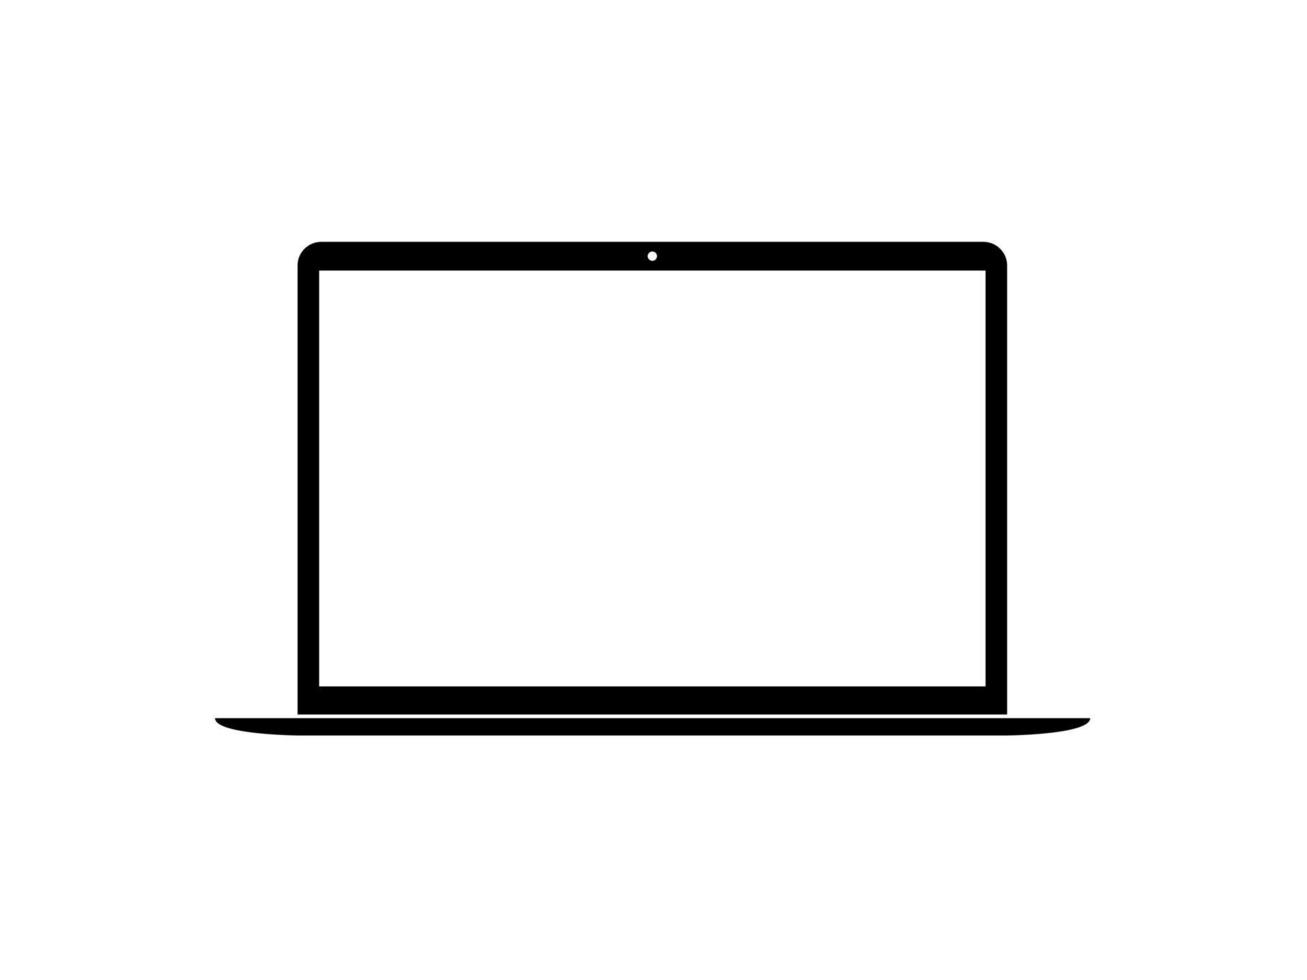 silhouette de l'ordinateur portable pour le signe, l'icône, le symbole, les applications, le site Web, le pictogramme, le logo, l'illustration d'art ou l'élément de conception graphique. illustration vectorielle vecteur